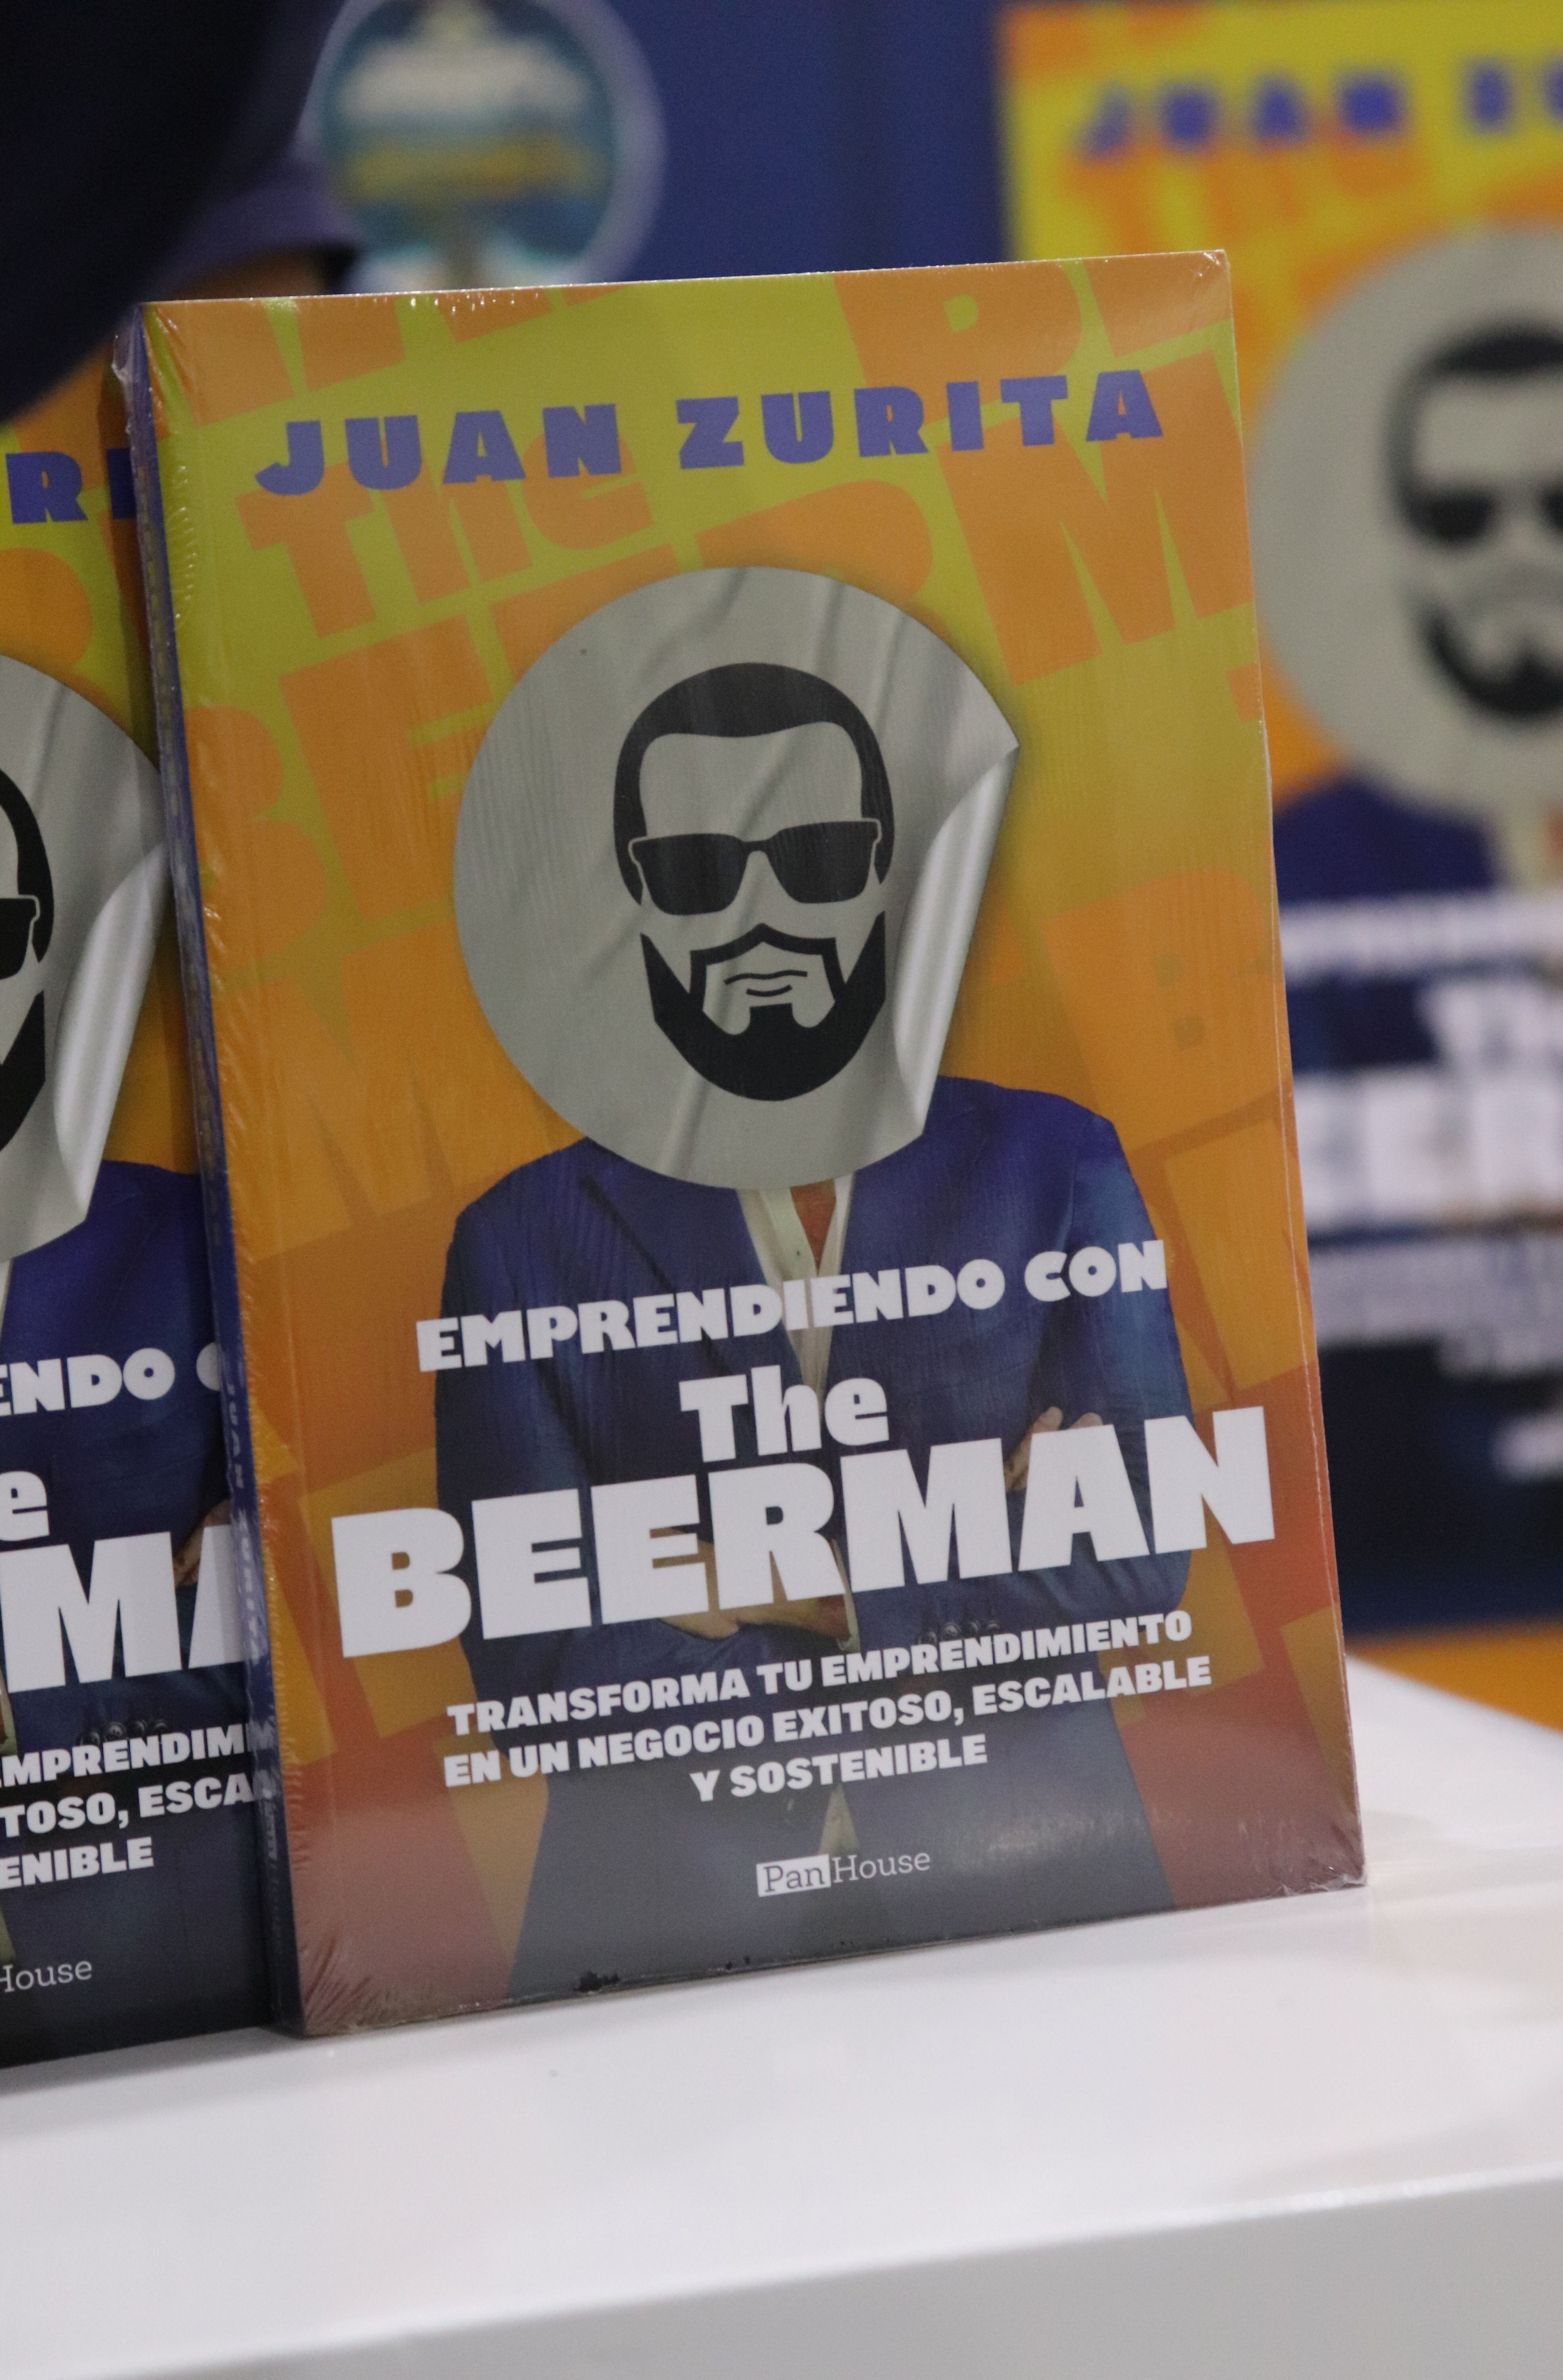 Juan Zurita participa en la Feria del Libro de Guayaquil con su primer libro 'Emprendiendo con The Beerman'.